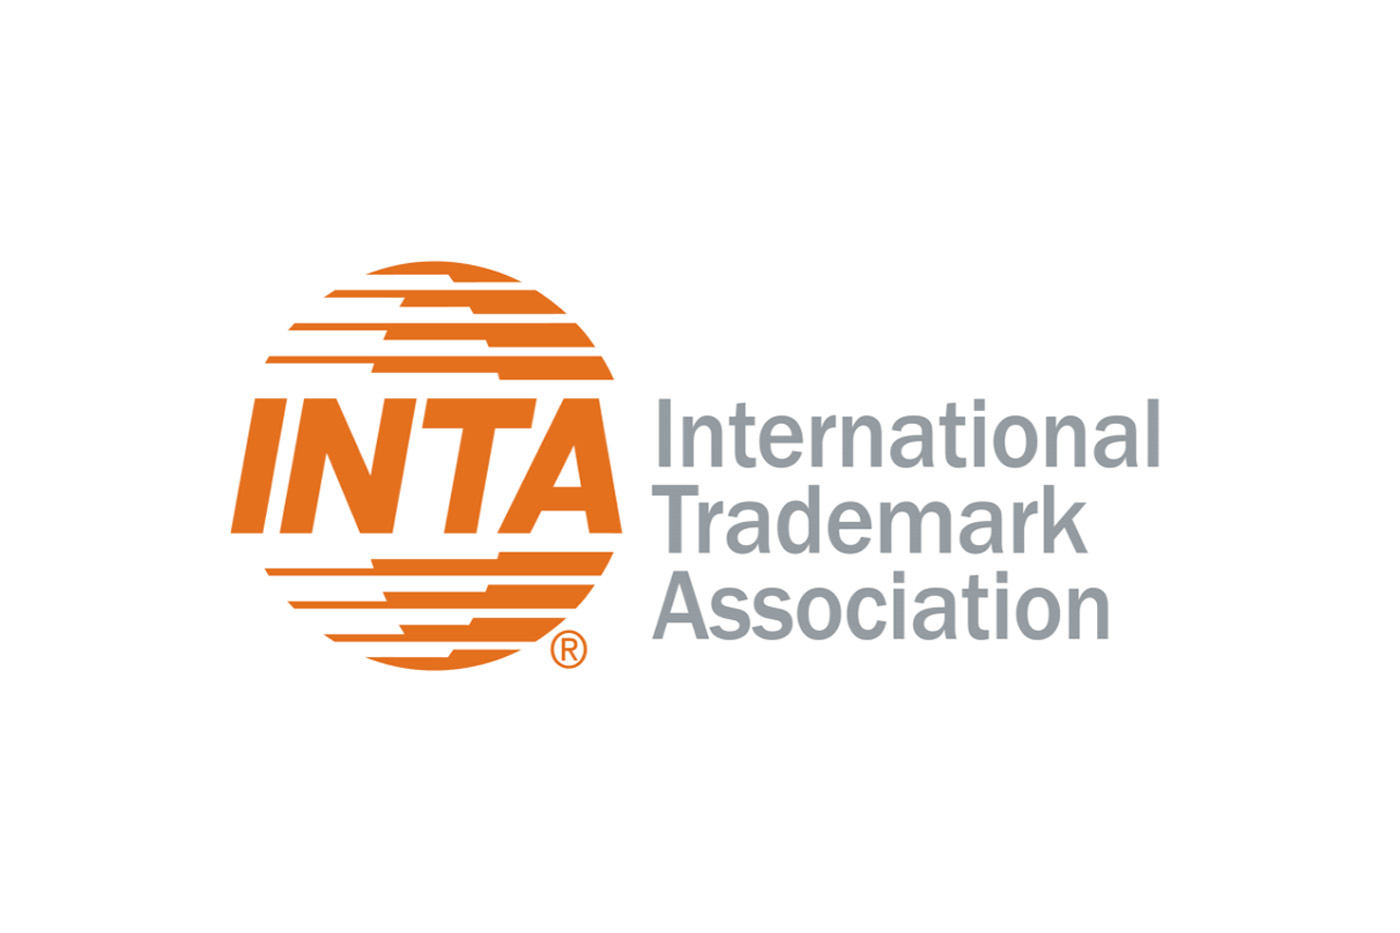 logotipo international trademark association